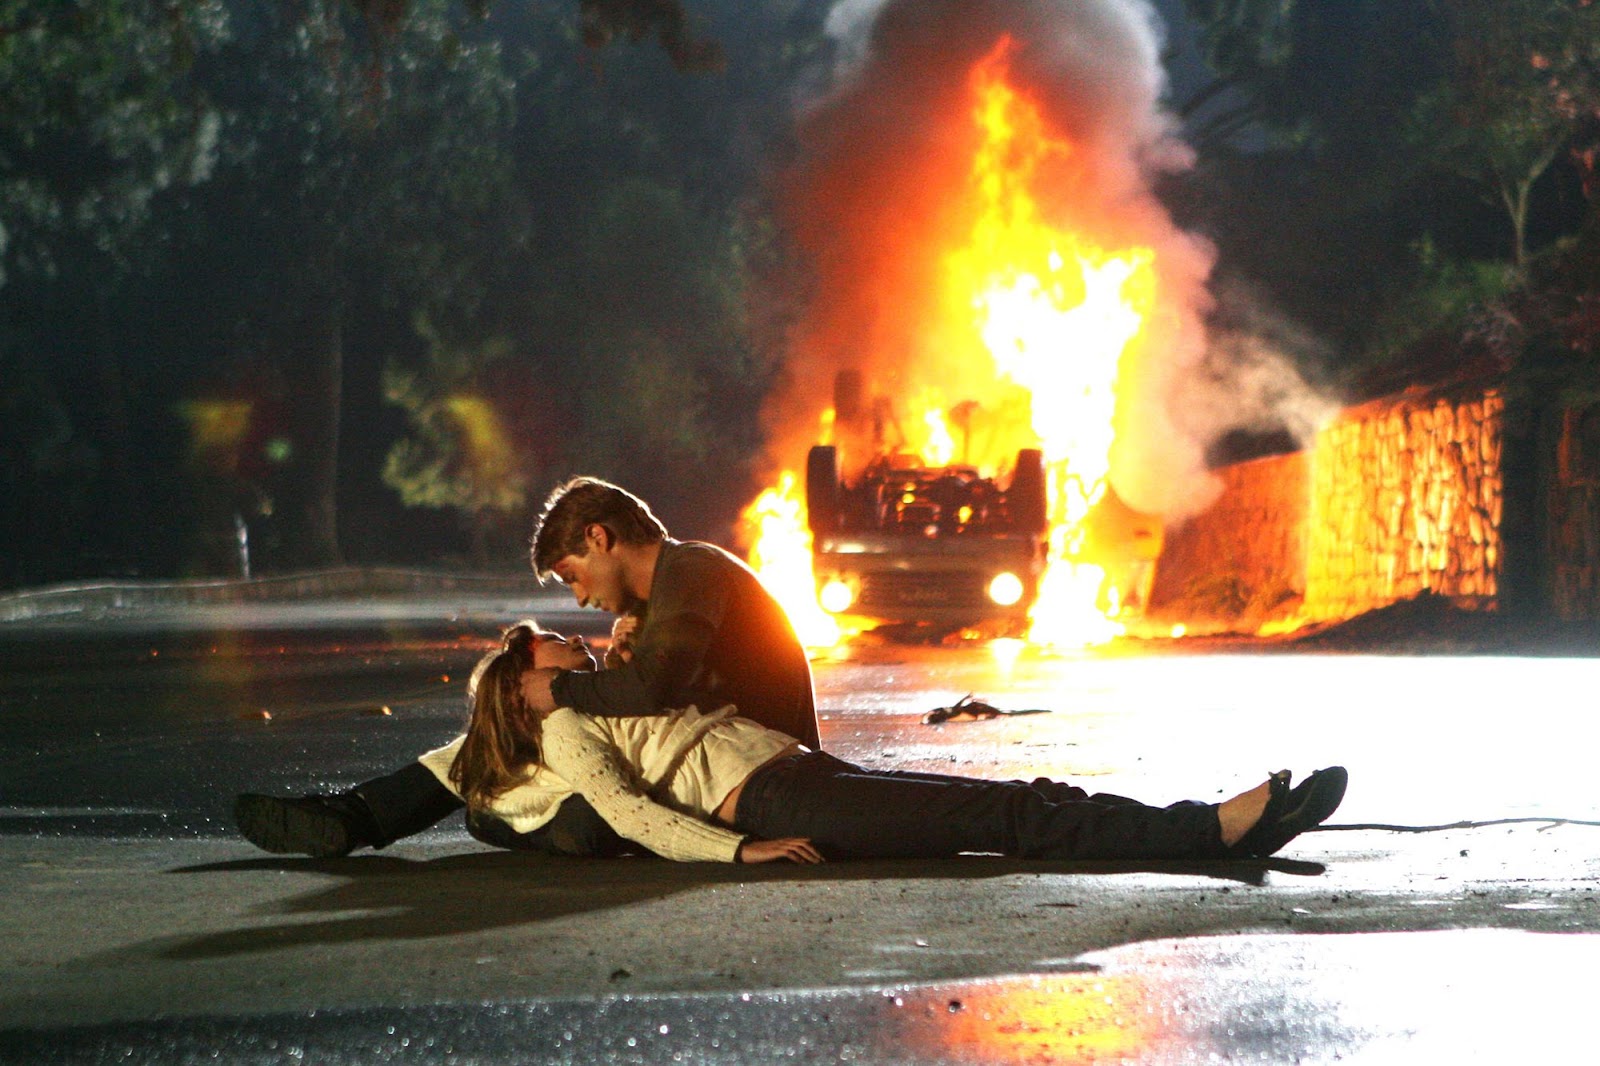 De fondo se ve un auto volcado incendiándose. Marissa está acostada en el suelo dando sus últimos suspiros. Ryan la recuesta entre sus piernas y la acaricia.